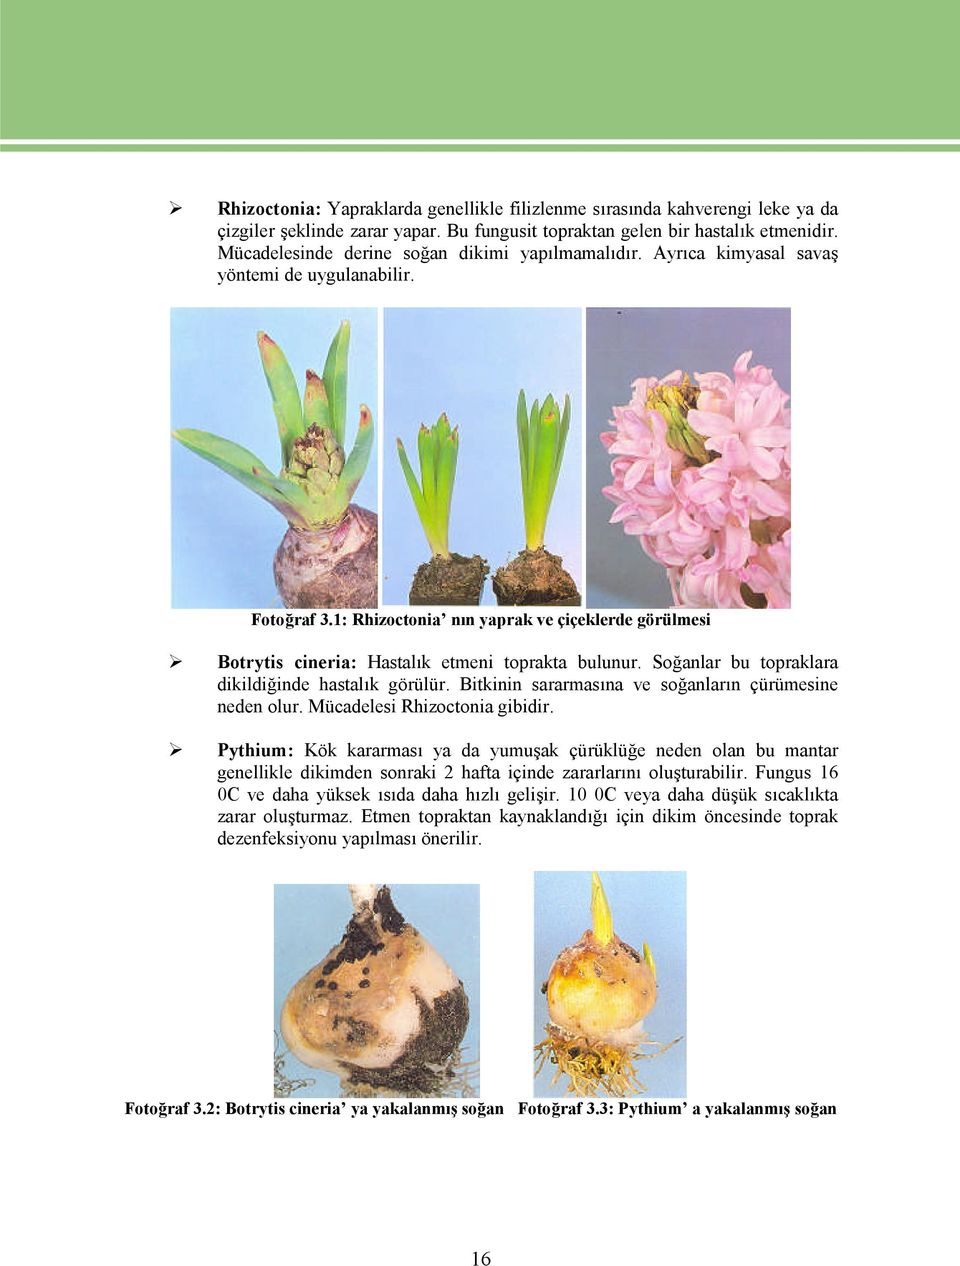 1: Rhizoctonia nın yaprak ve çiçeklerde görülmesi Botrytis cineria: Hastalık etmeni toprakta bulunur. Soğanlar bu topraklara dikildiğinde hastalık görülür.